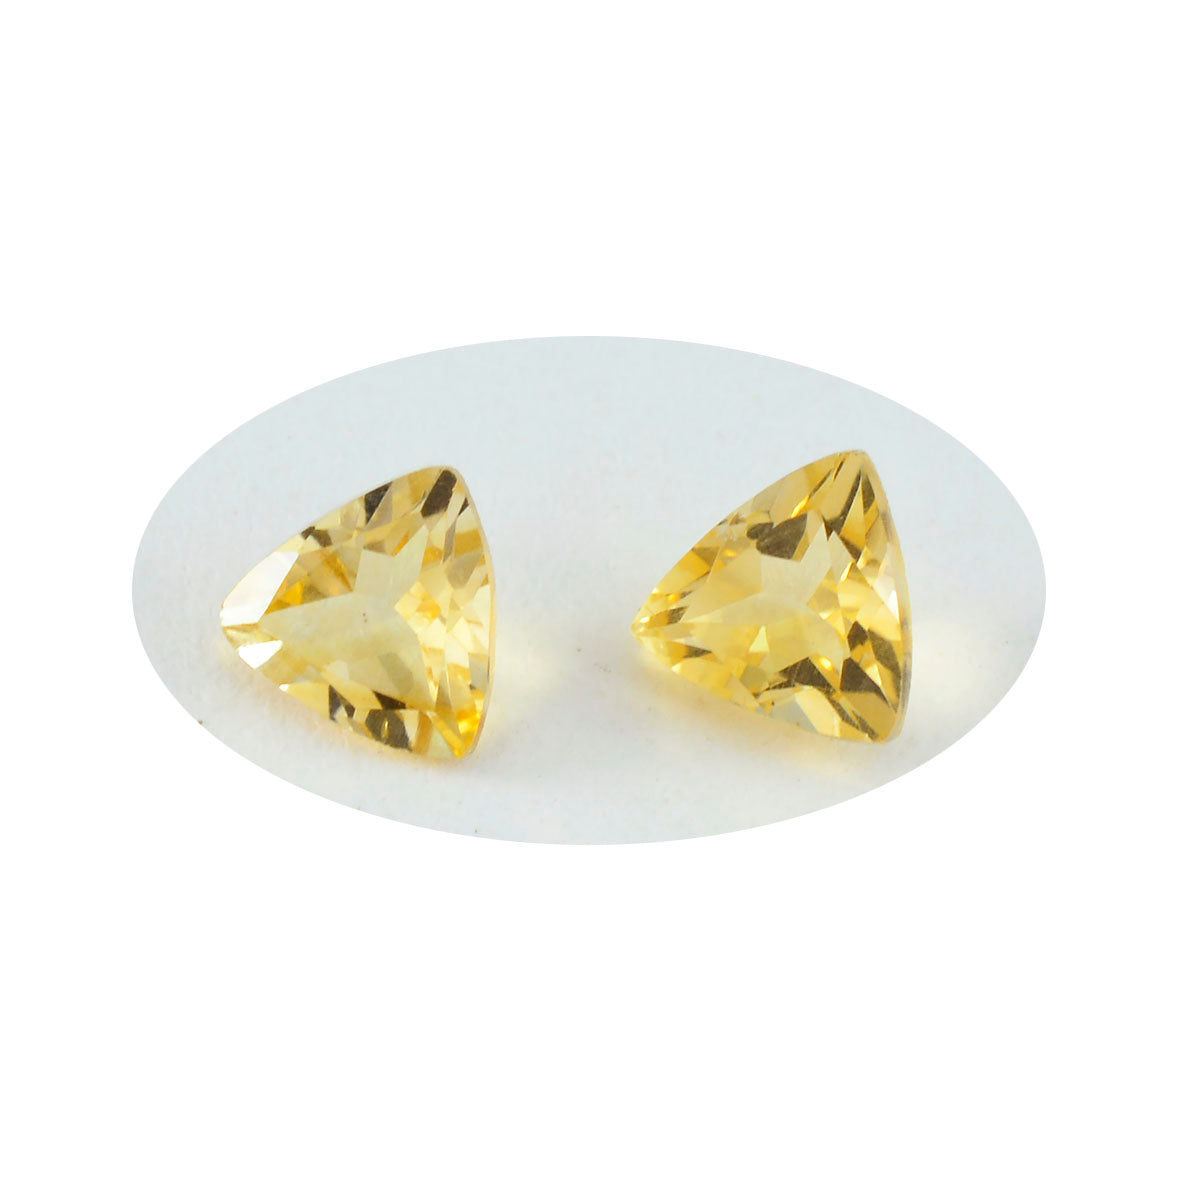 riyogems 1 шт. натуральный желтый цитрин ограненный 10x10 мм форма триллиона потрясающего качества, свободный драгоценный камень